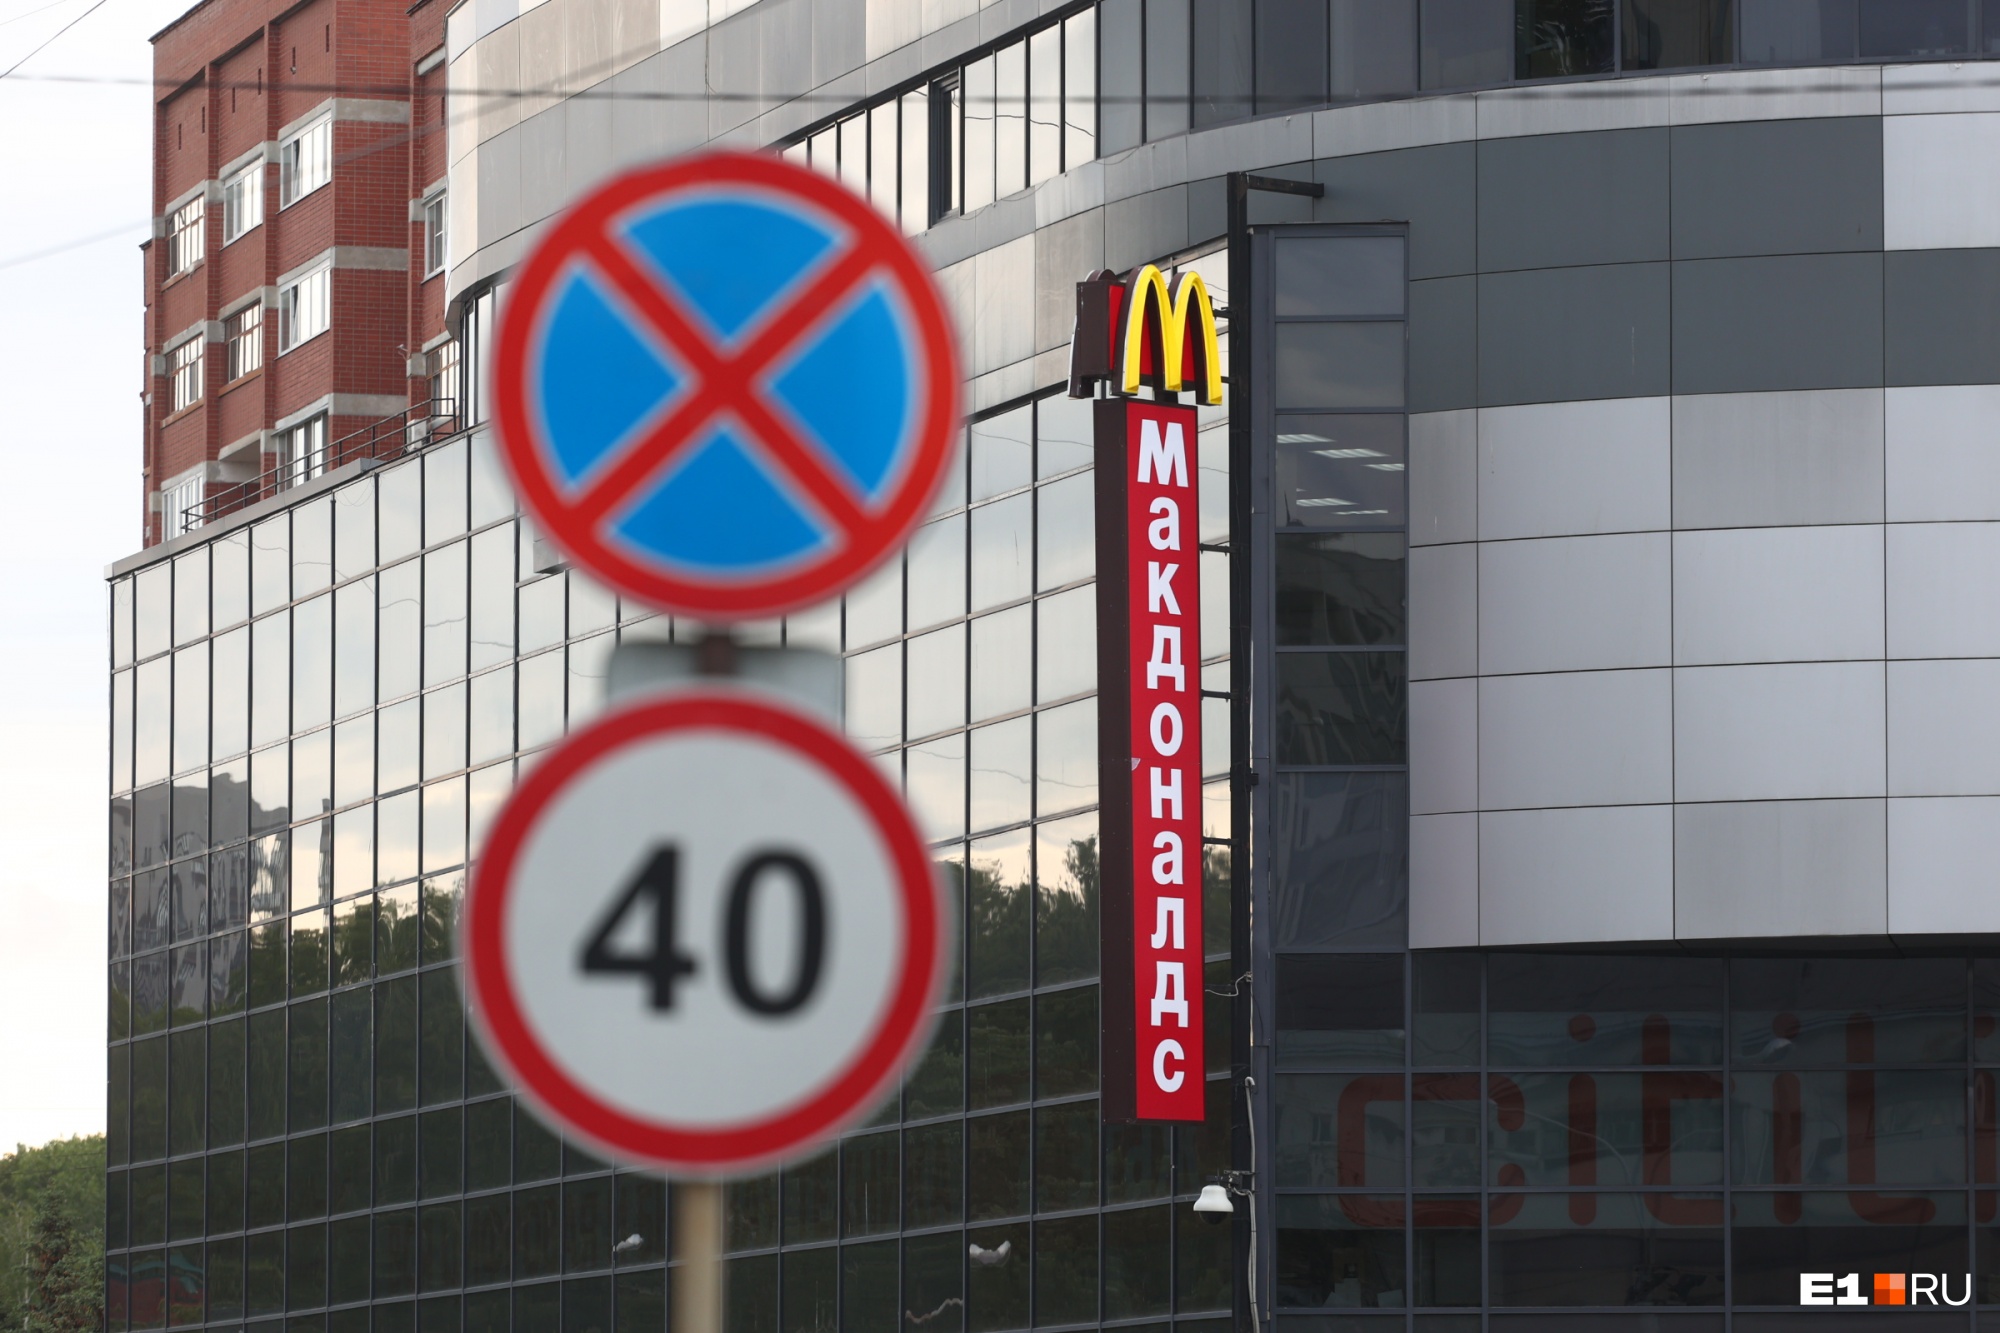 «Топорно и точка»: екатеринбуржцы раскритиковали новое название «Макдоналдса» и придумали варианты получше